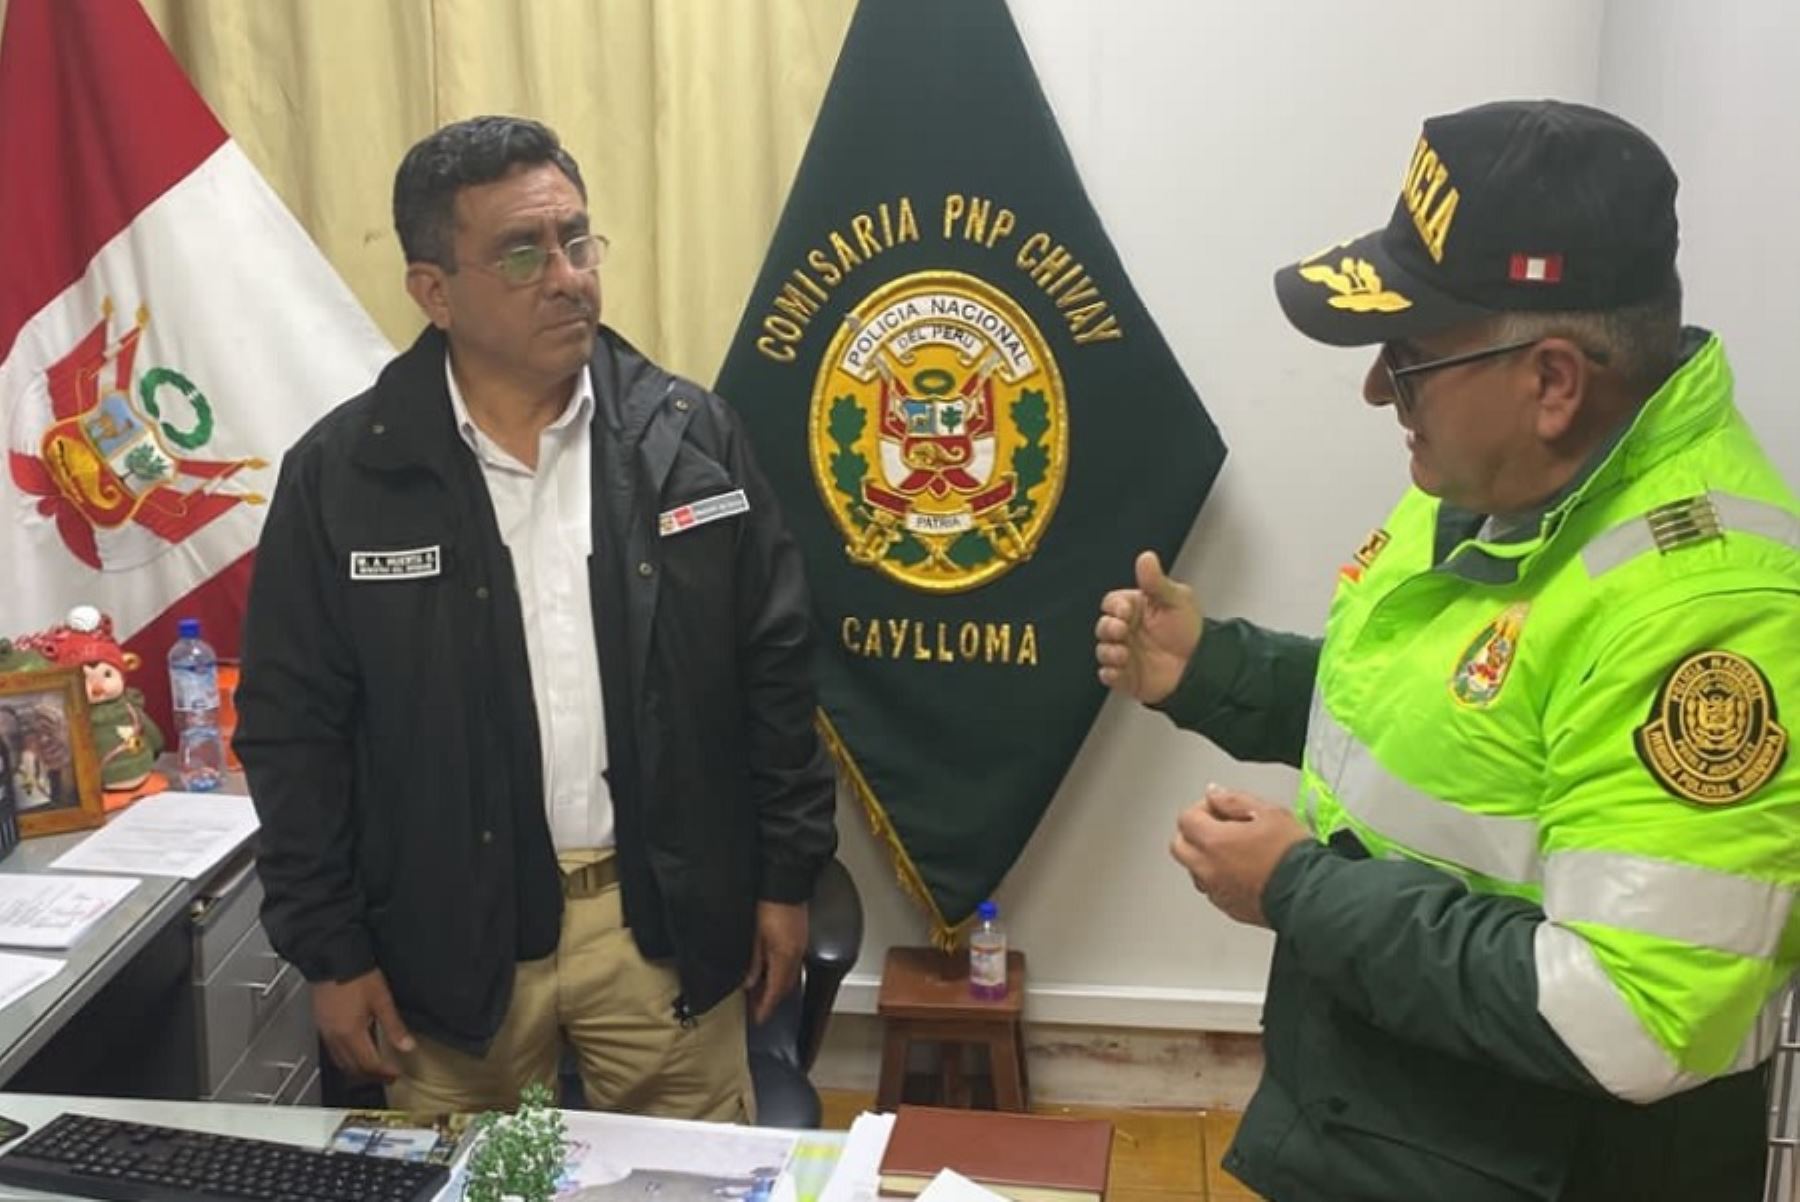 El ministro del Interior, Willy Huerta Olivas, llegó hoy al distrito de Chivay, provincia de Caylloma, región Arequipa, para supervisar el plan de seguridad de la Policía Nacional del Perú en relación a las Elecciones Regionales y Municipales 2022.